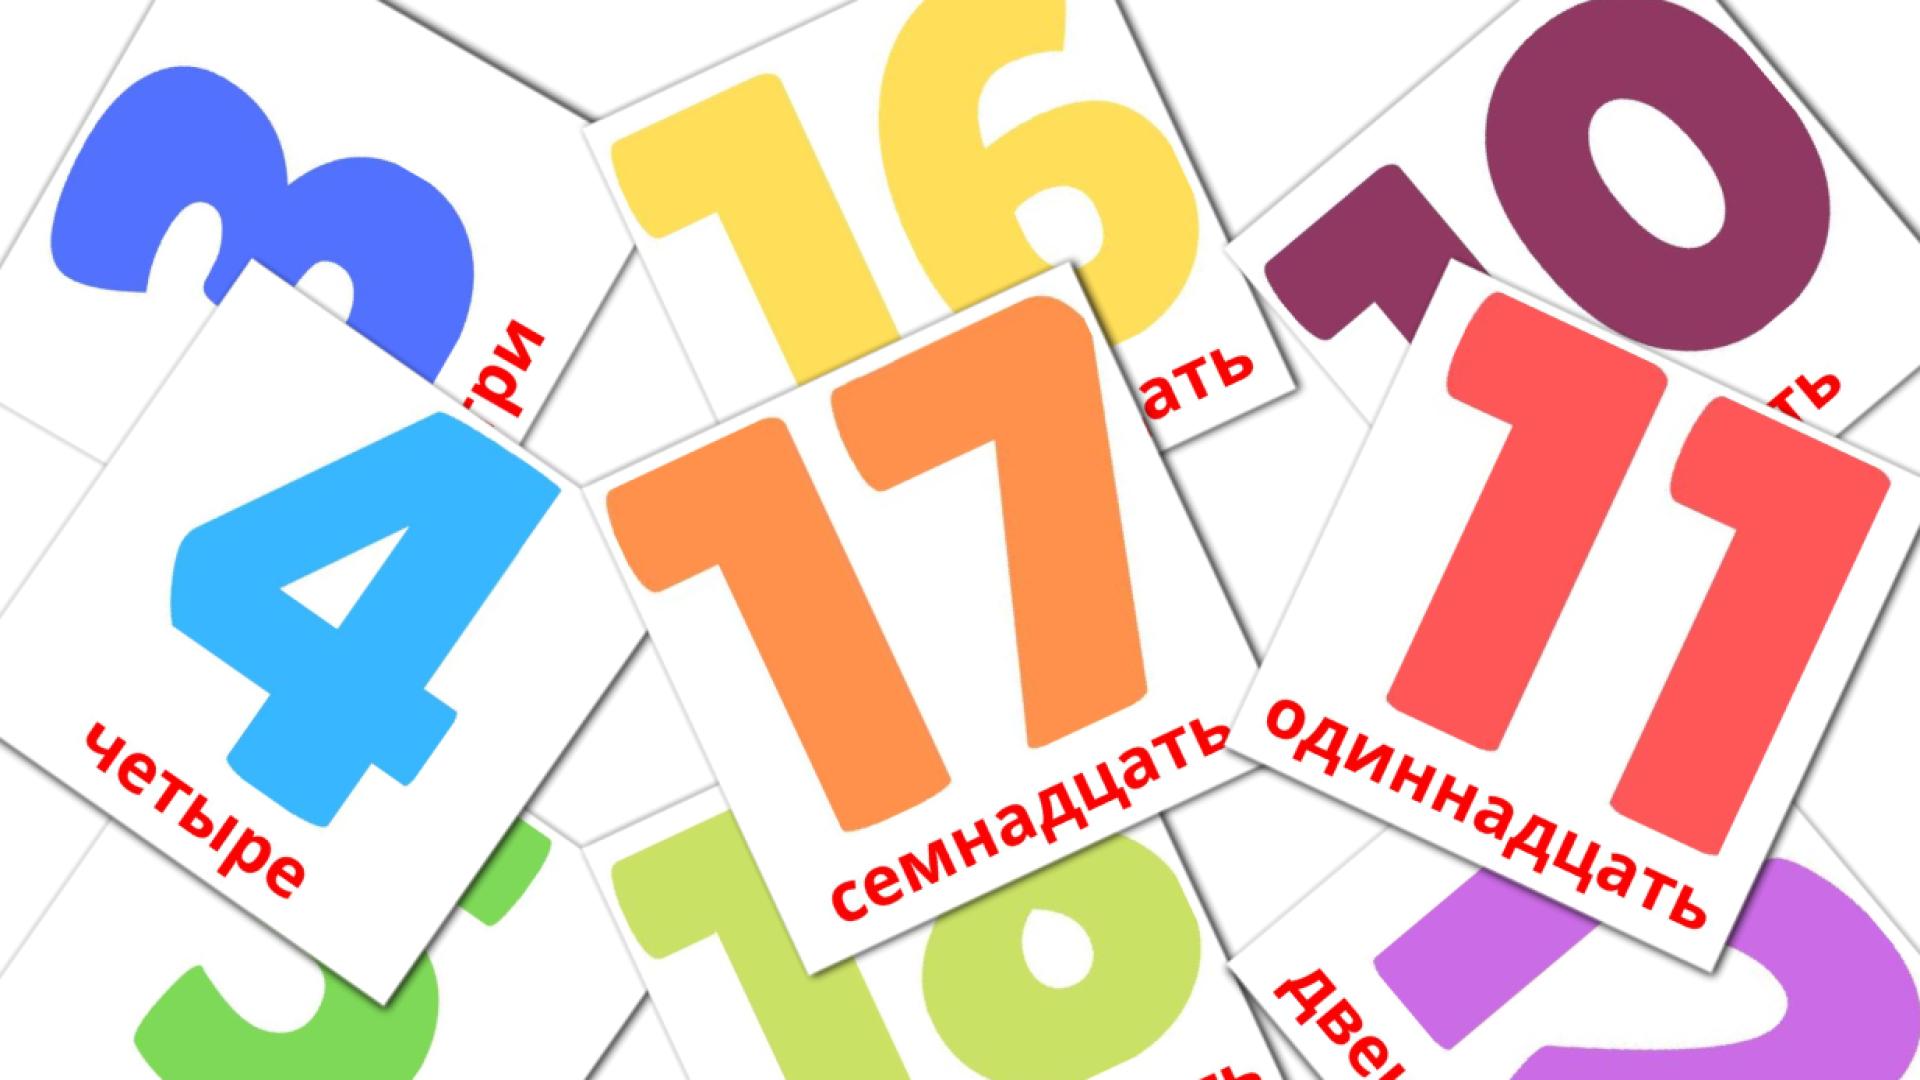 Bildkarten für Цифры (1-20)